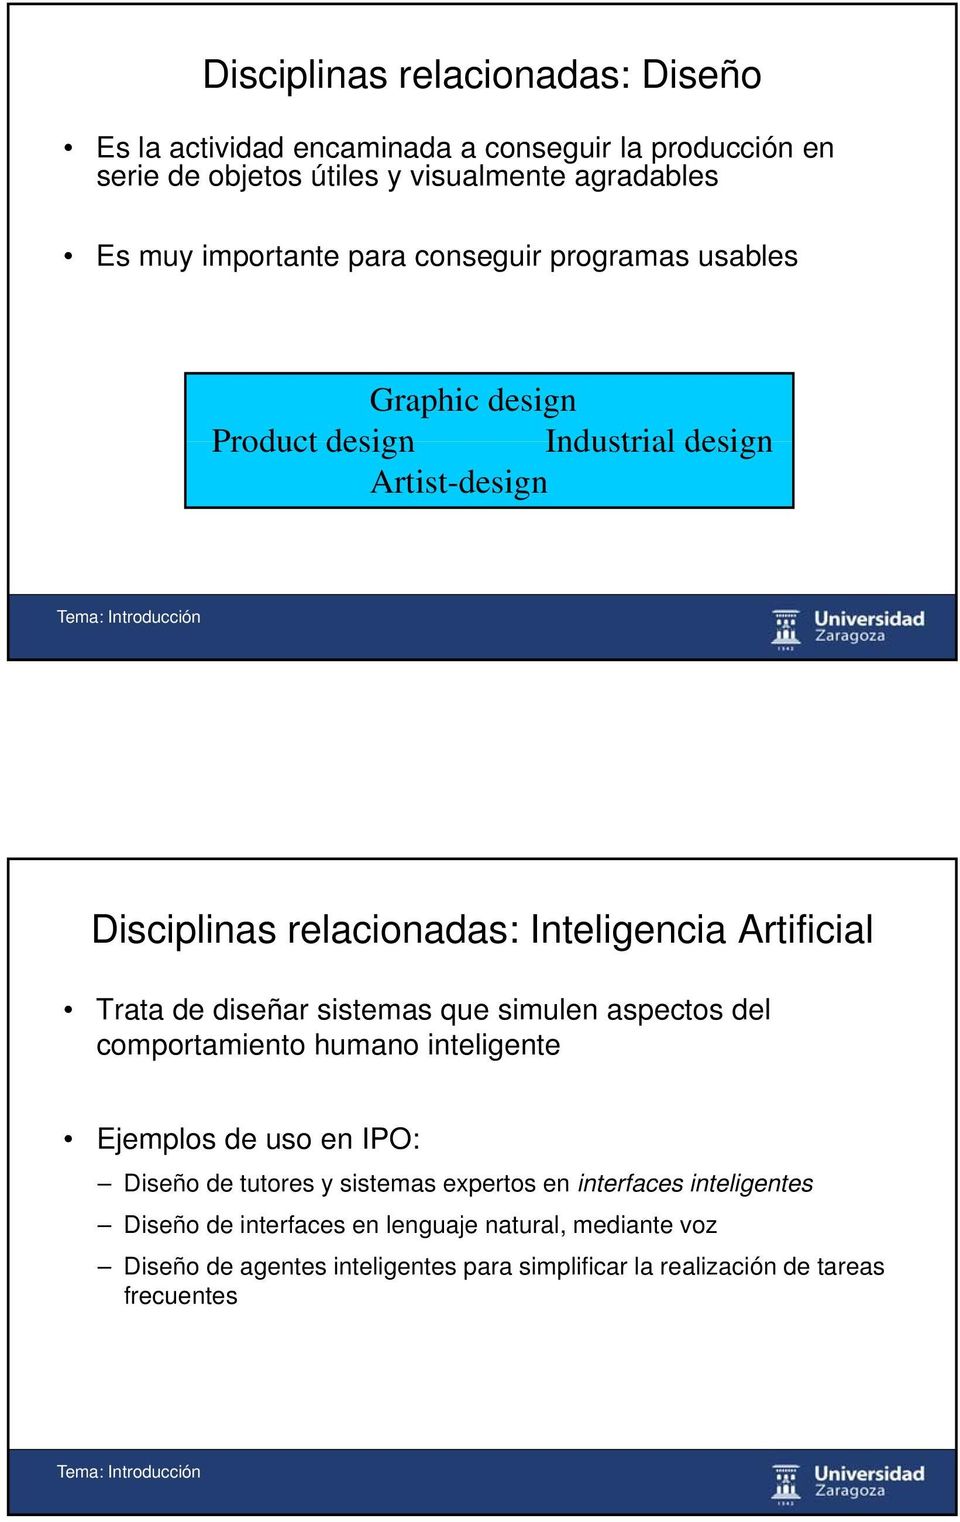 Artificial Trata de diseñar sistemas que simulen aspectos del comportamiento humano inteligente Ejemplos de uso en IPO: Diseño de tutores y sistemas